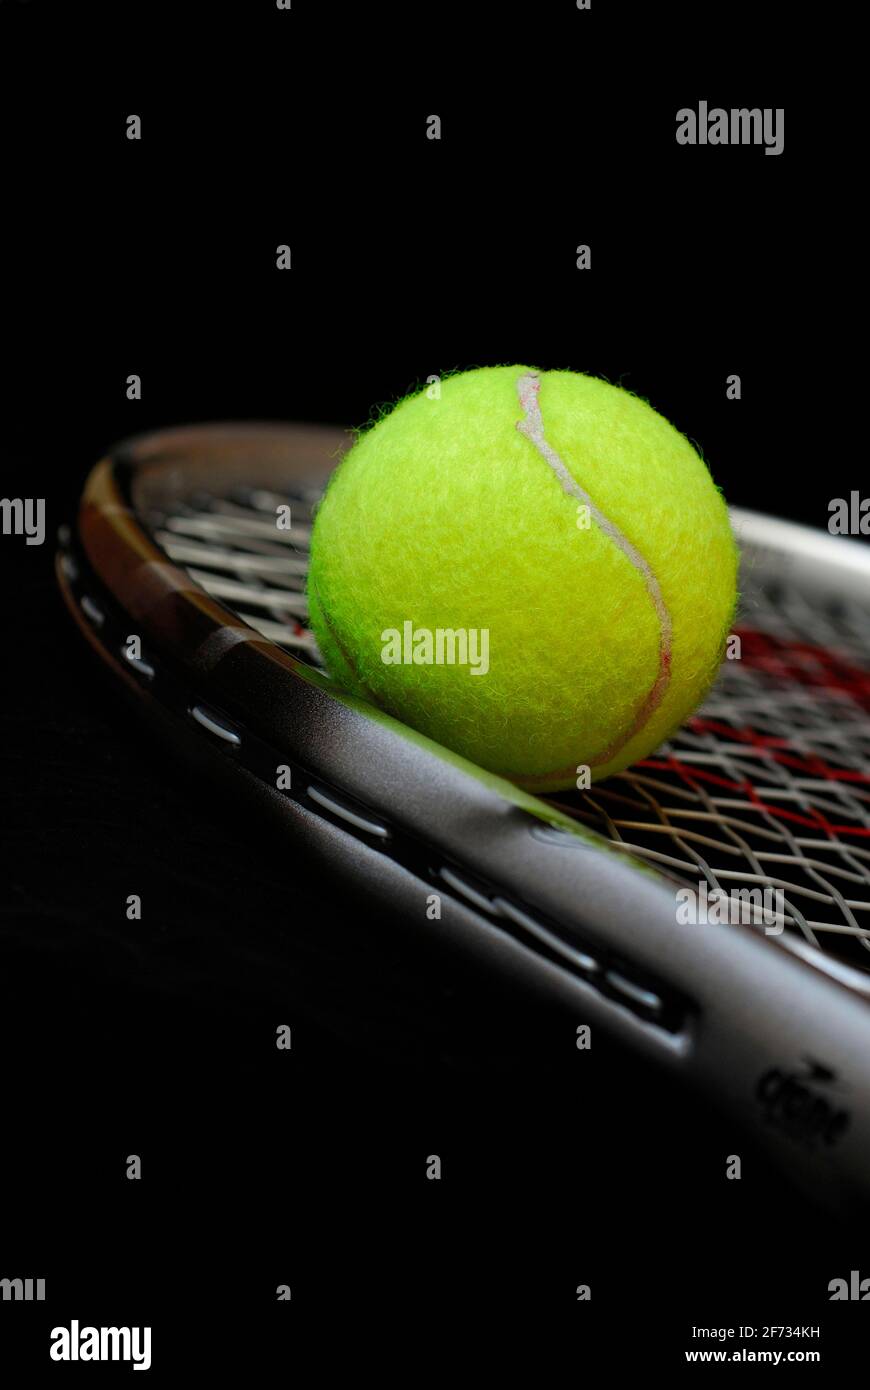 Balle de tennis sur raquette, raquette de tennis, balle, balles, tennis, sports de tennis, équipement sportif, raquette, raquette de tennis Banque D'Images